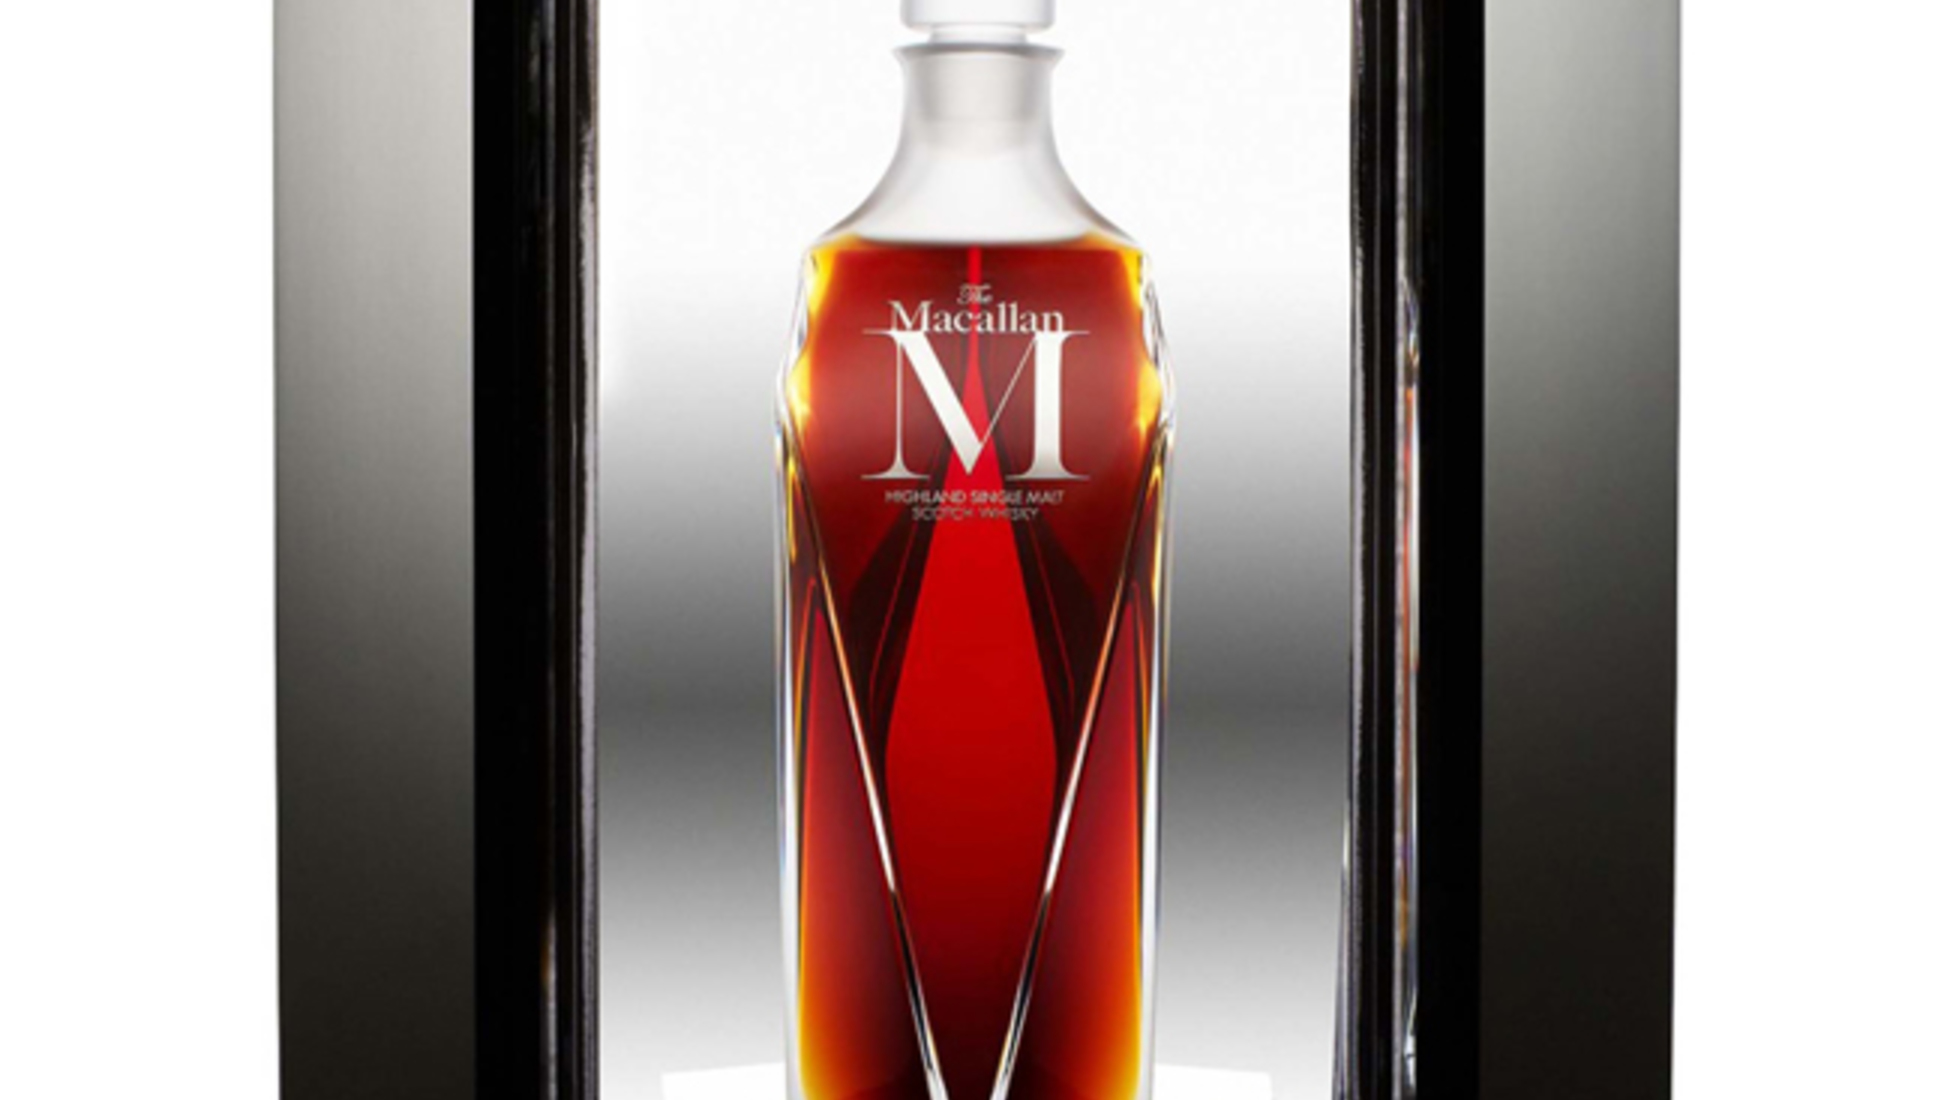 ett av de mest populära märkena bland whiskyinvesterare 2022 - 2023.